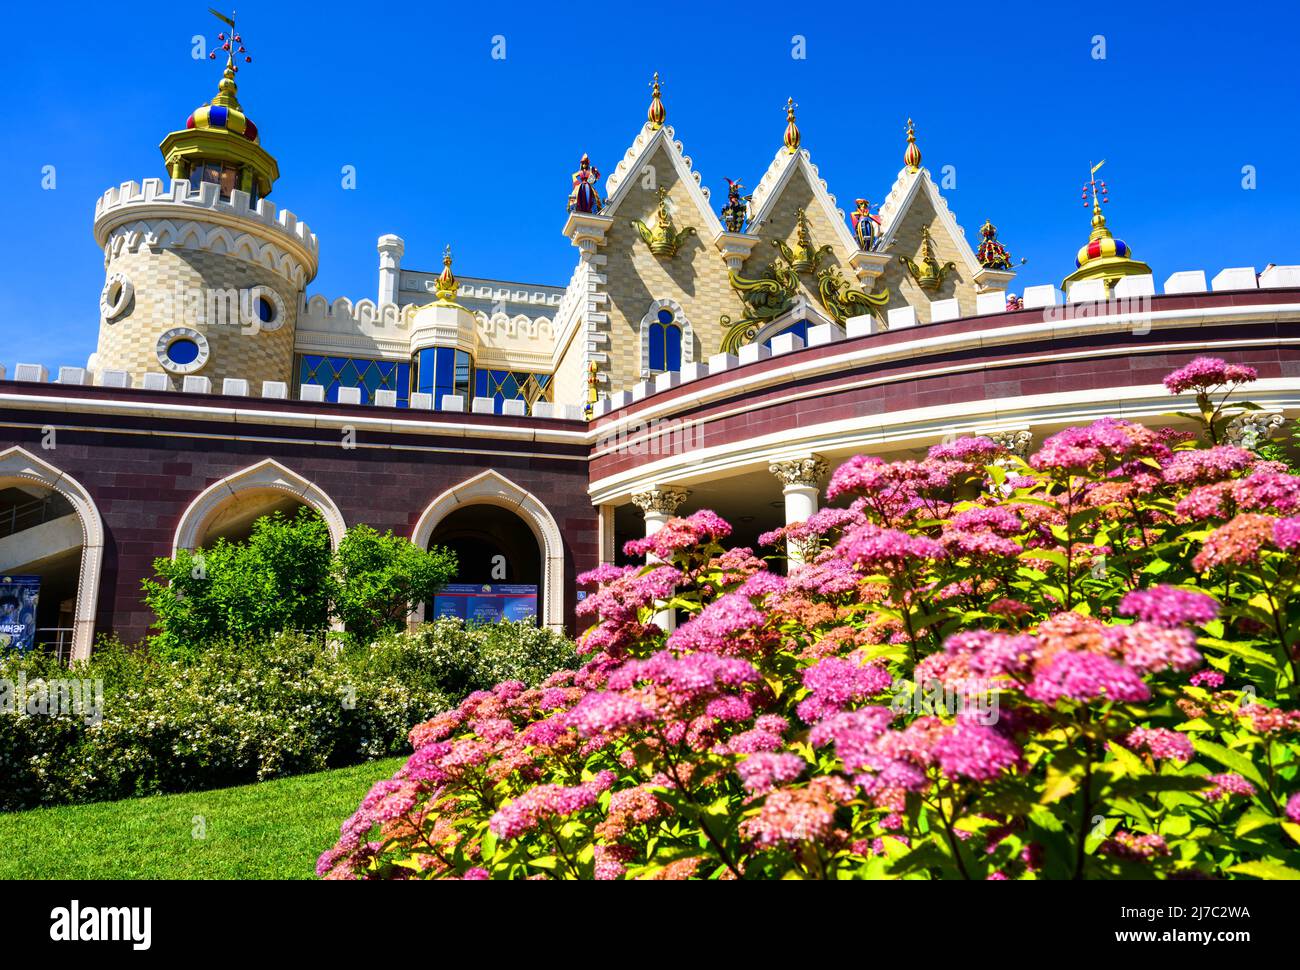 Kazan, Russie - 18 juin 2021: Théâtre de marionnettes d'État de Tatar Ekiyat, Kazan, Tatarstan. C'est un monument historique de Kazan. Vue panoramique sur le magnifique bâtiment, l'enfant Banque D'Images